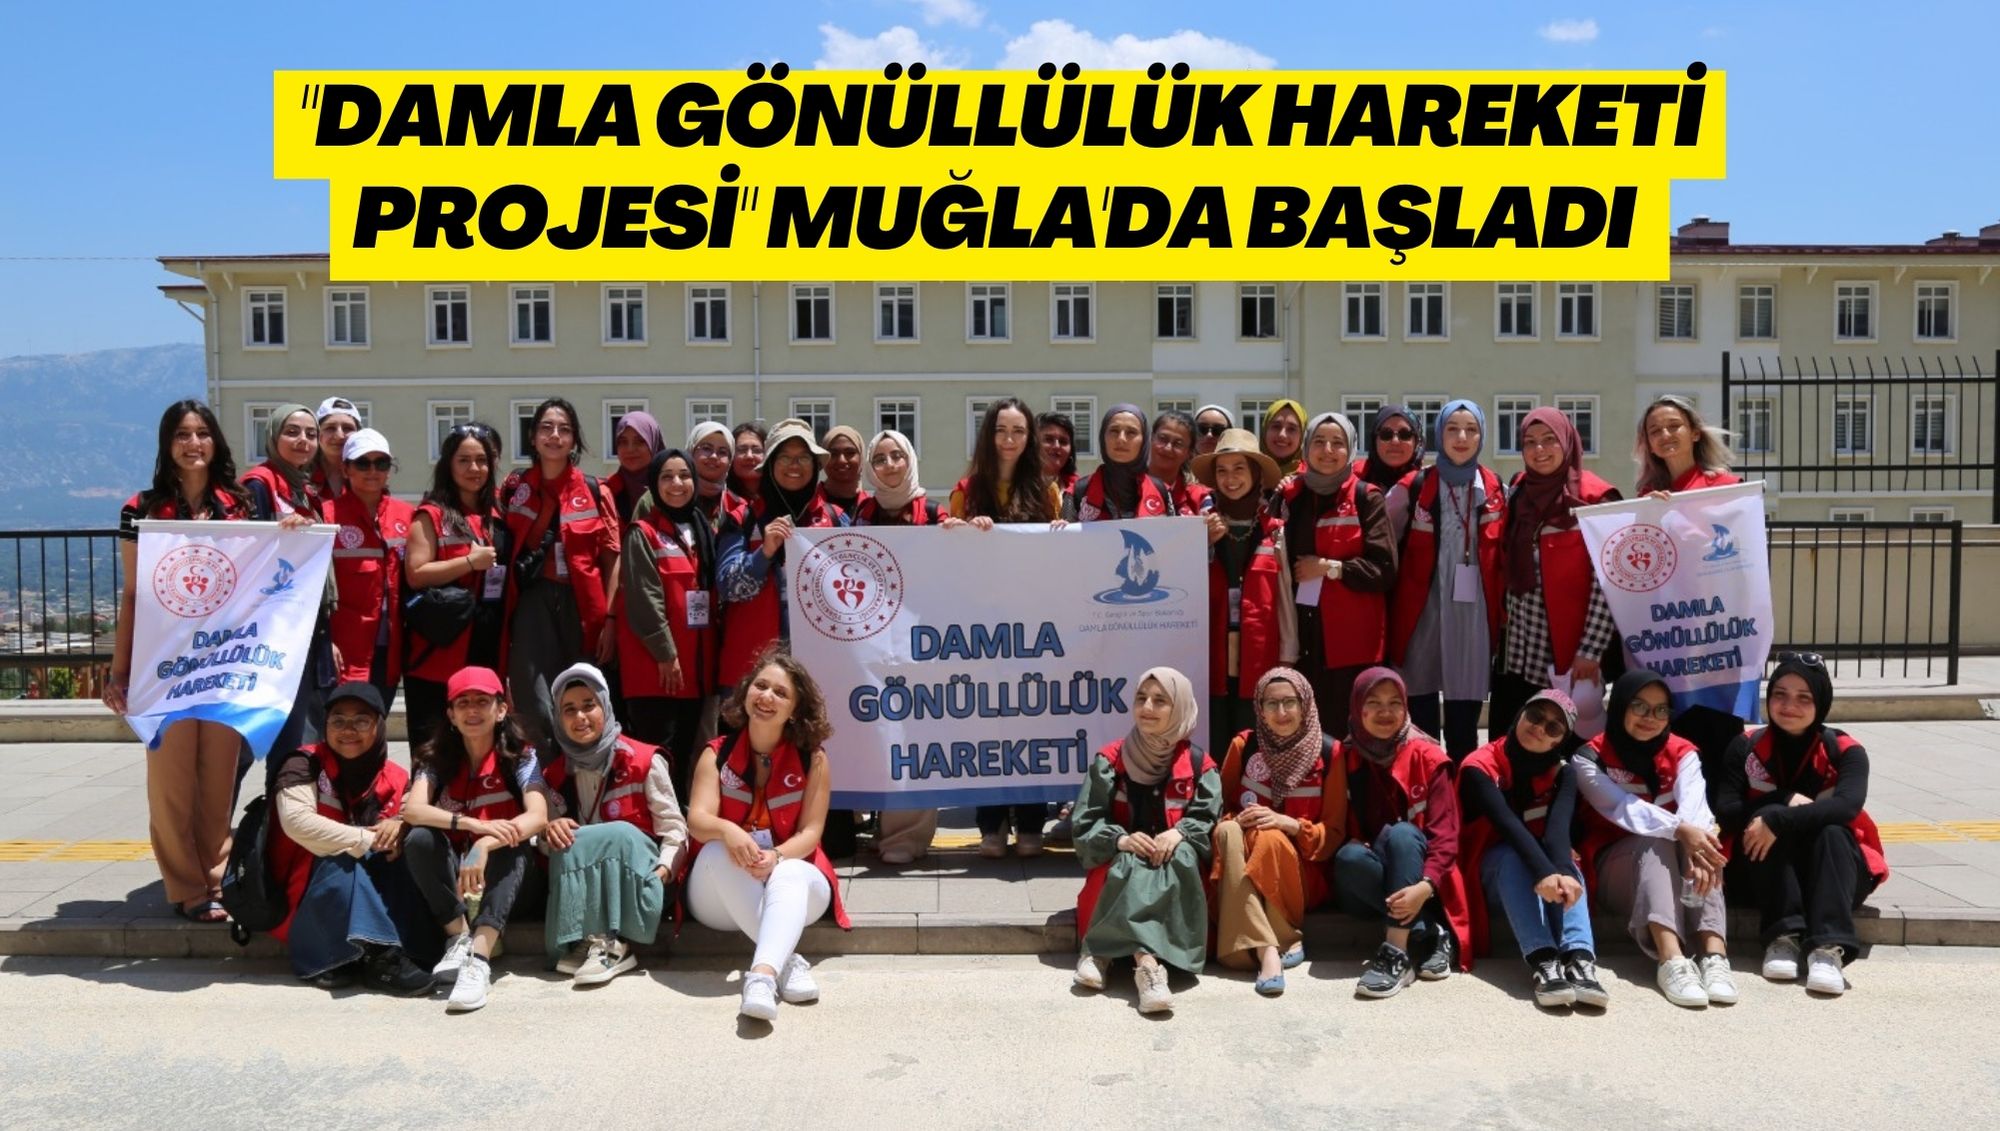 "DAMLA GÖNÜLLÜLÜK HAREKETİ PROJESi" MUĞLA'DA BAŞLADI